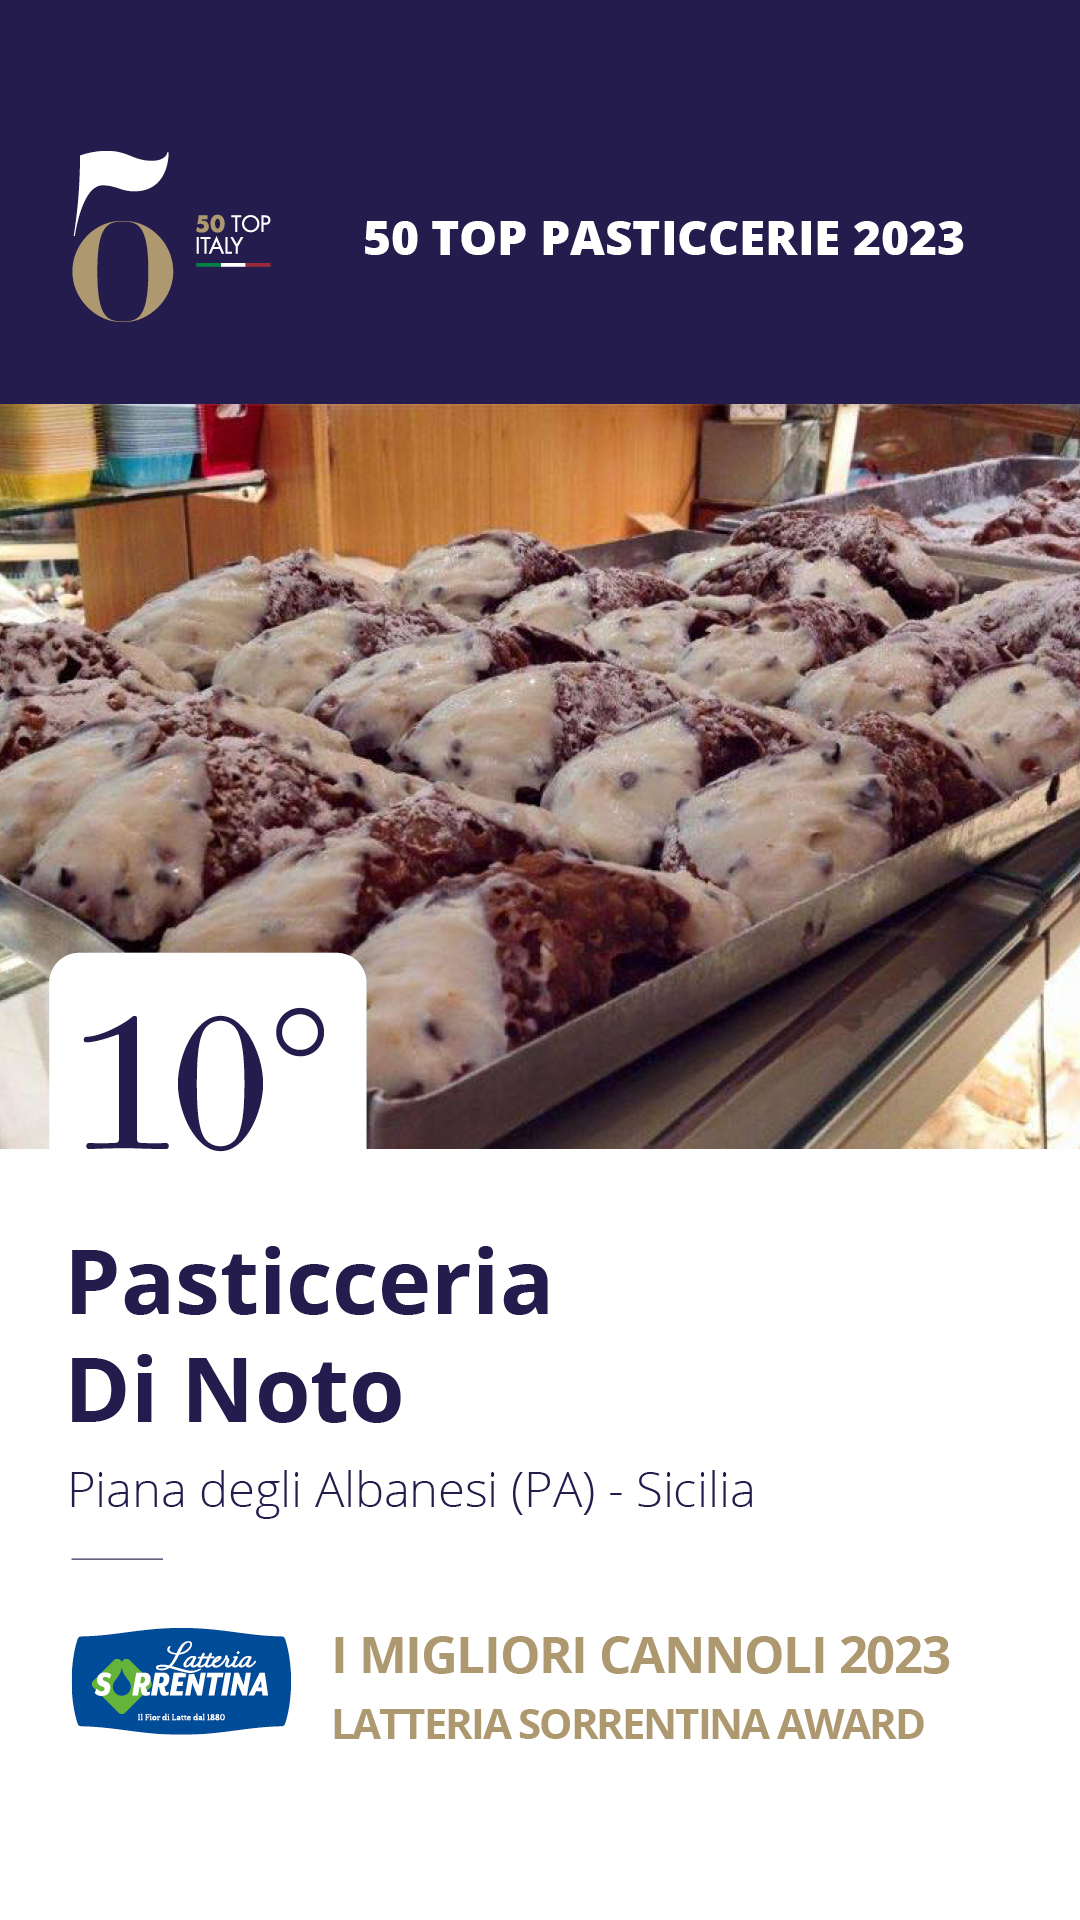 10. Pasticceria Di Noto - Piana degli Albanesi (PA), Sicilia